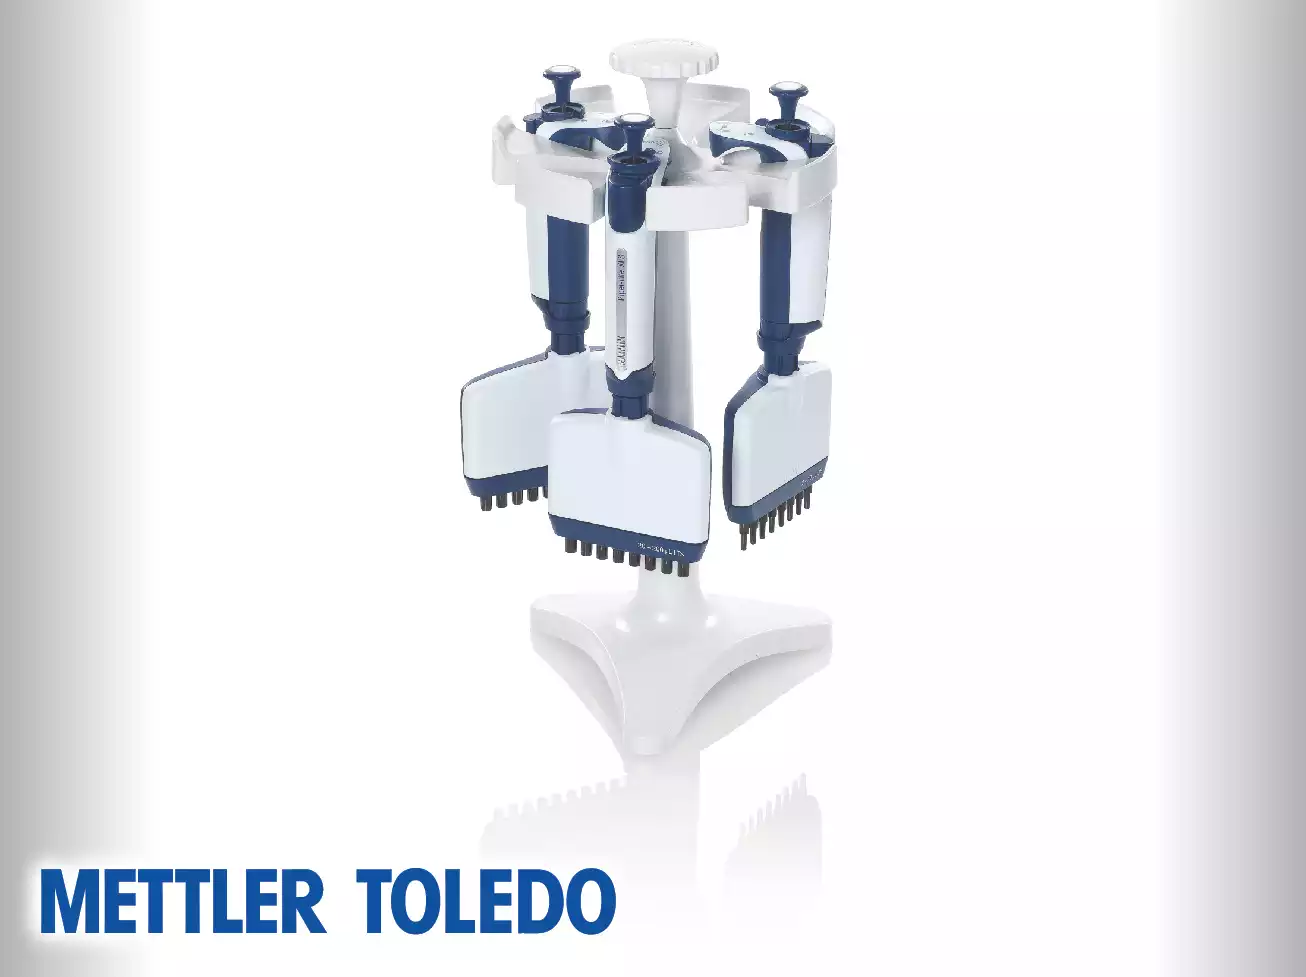 Mettler Toledo Multichannel Manual Pipettes